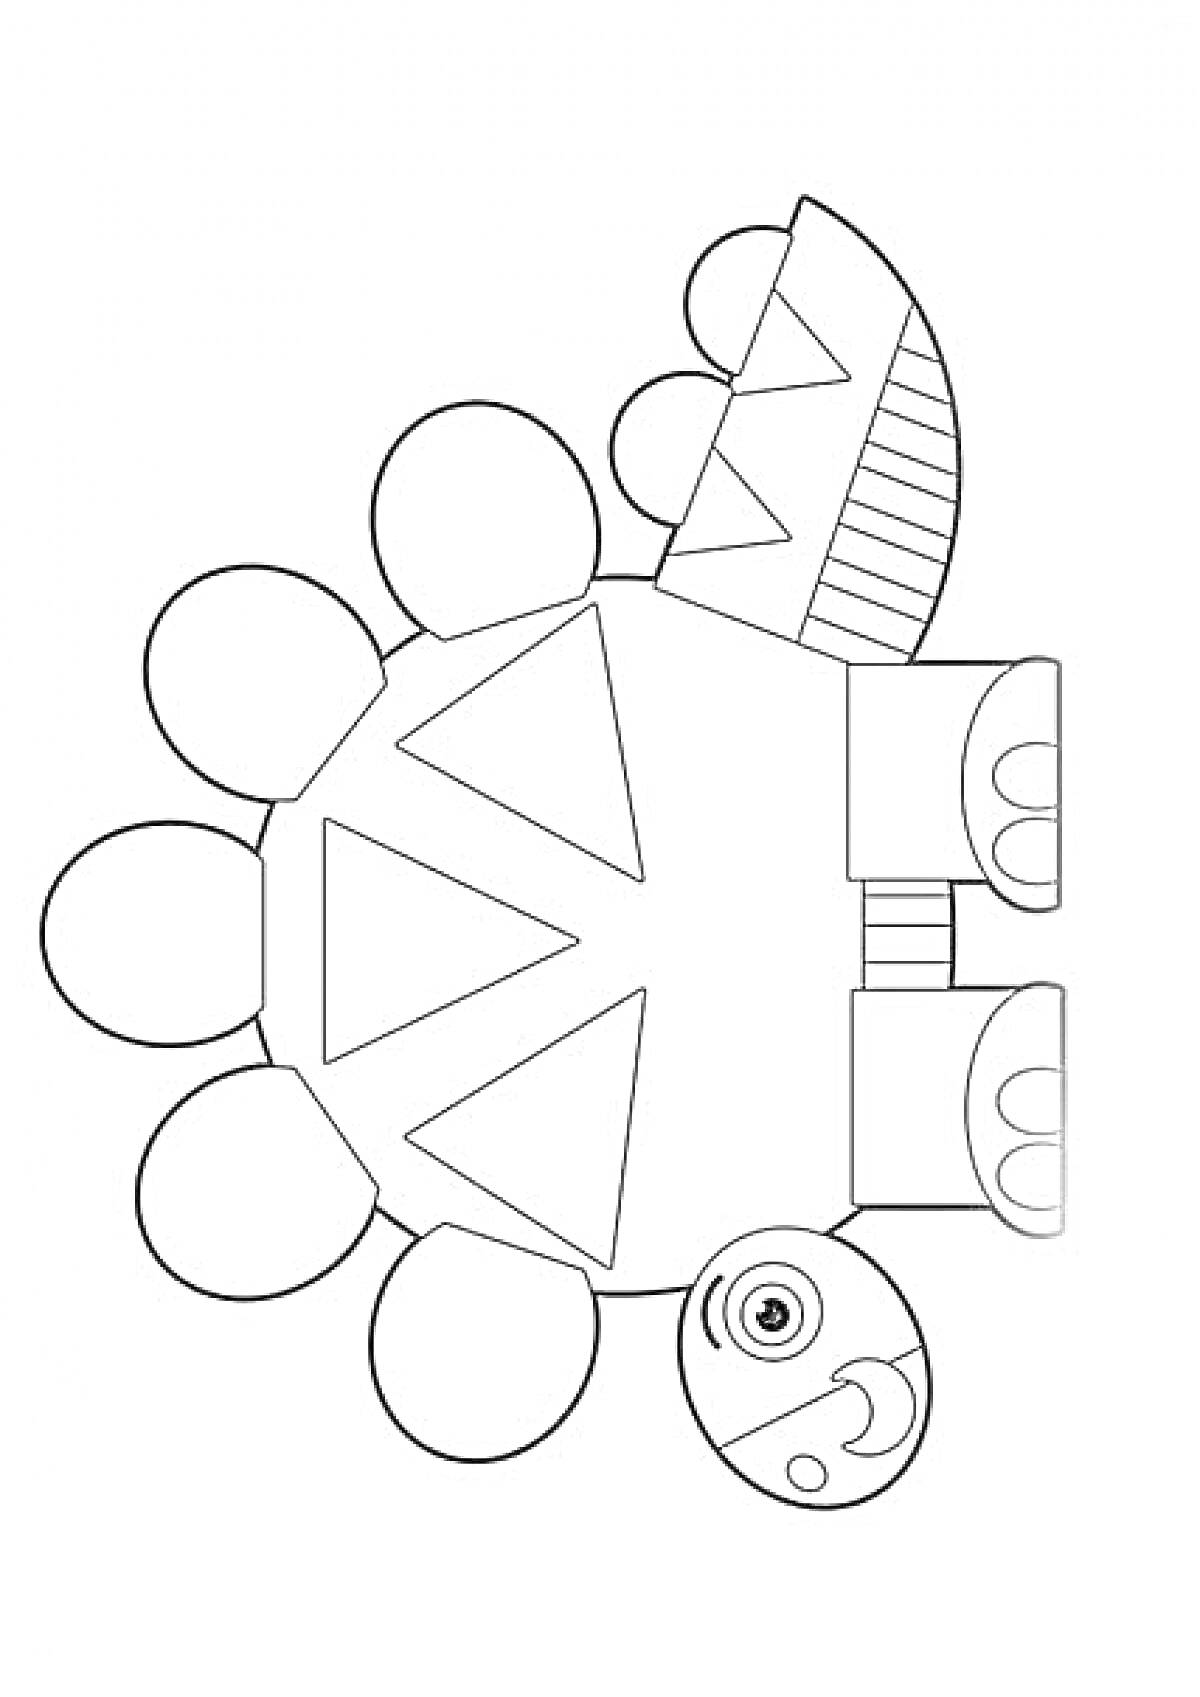 Раскраска Черепаха с кругами, треугольниками и прямоугольниками